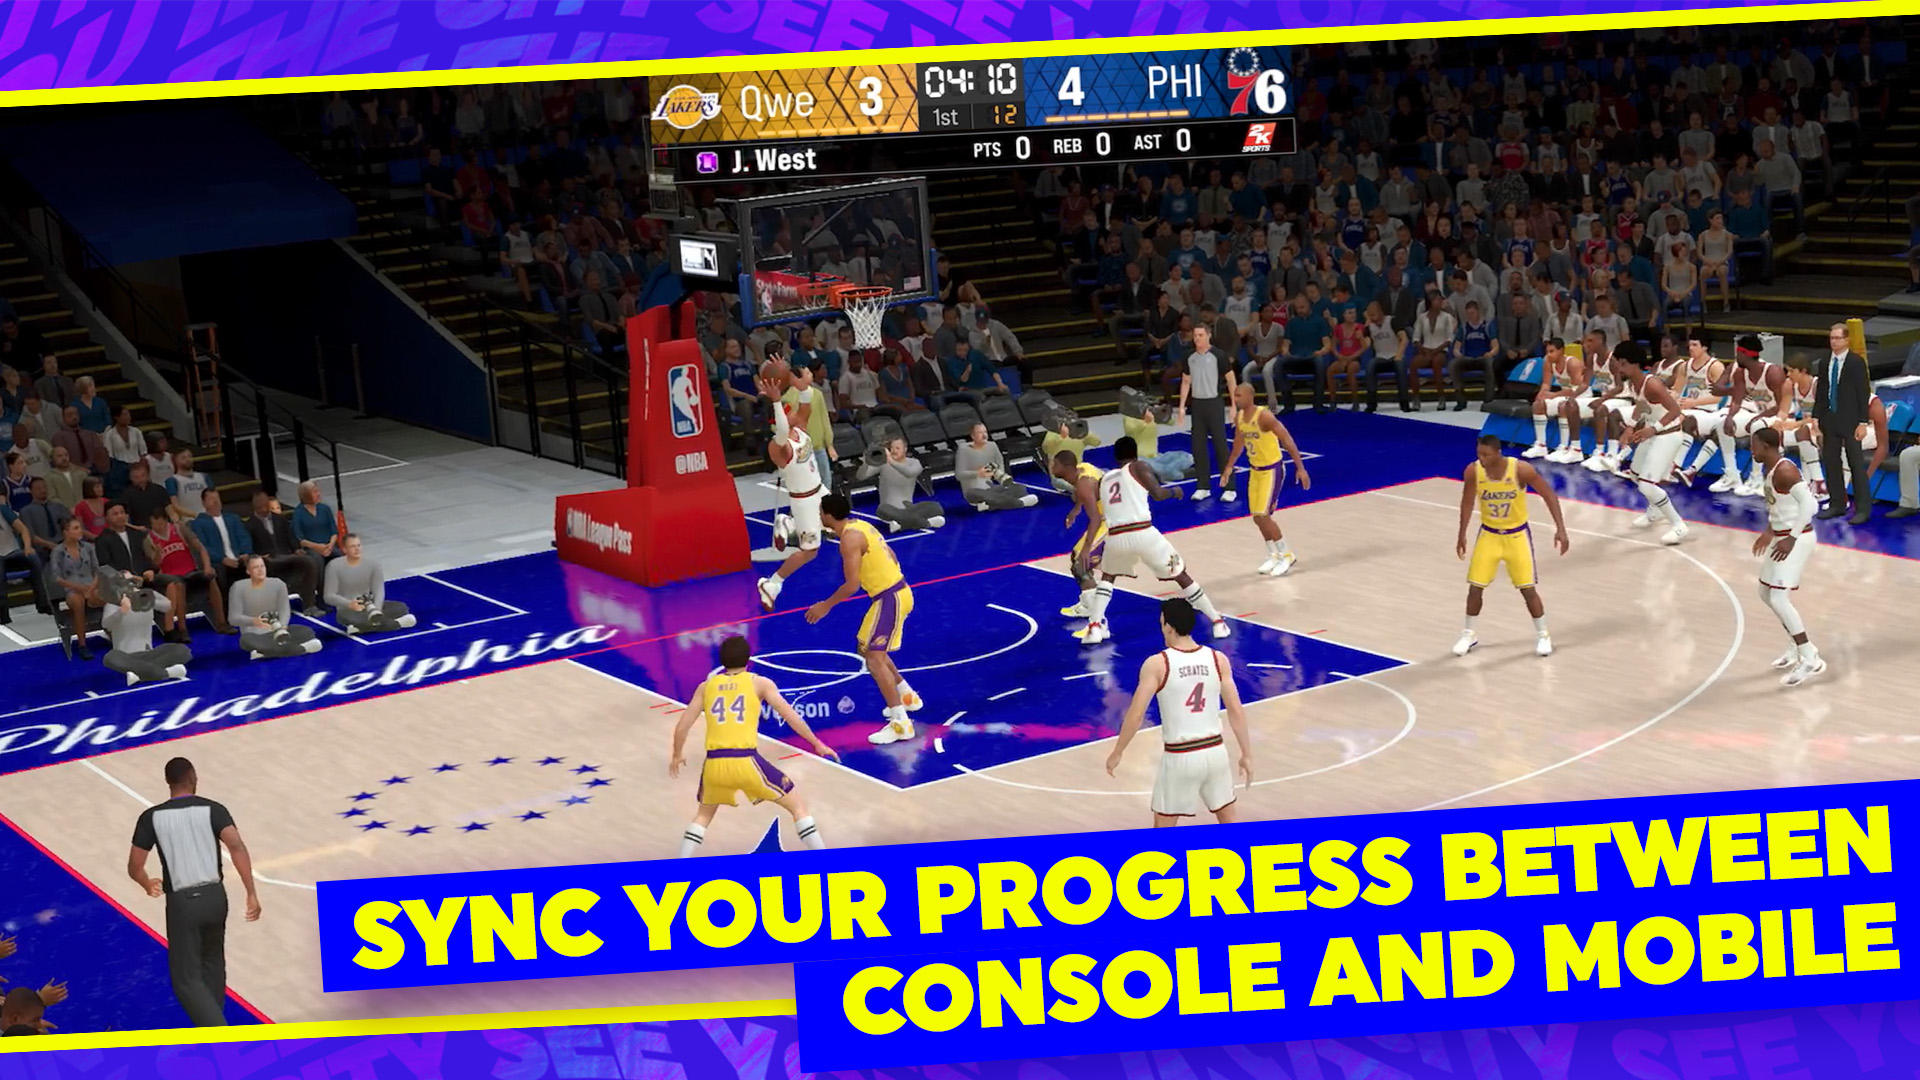 NBA 2K24 MyTEAM screenshot game